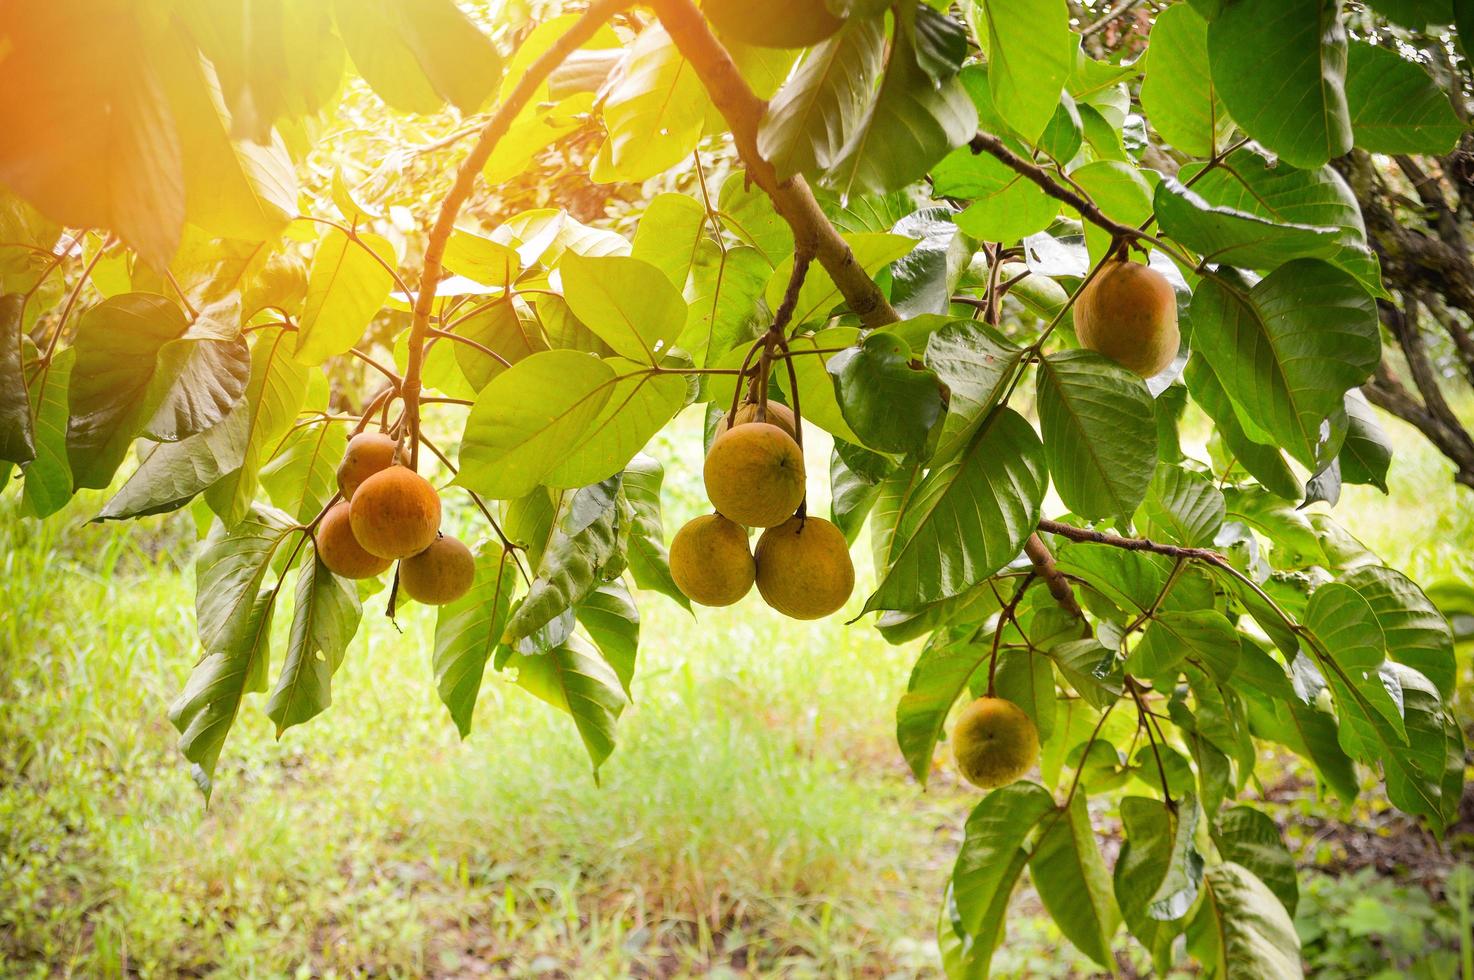 Santolfrucht am Baum im Garten tropische Früchte foto